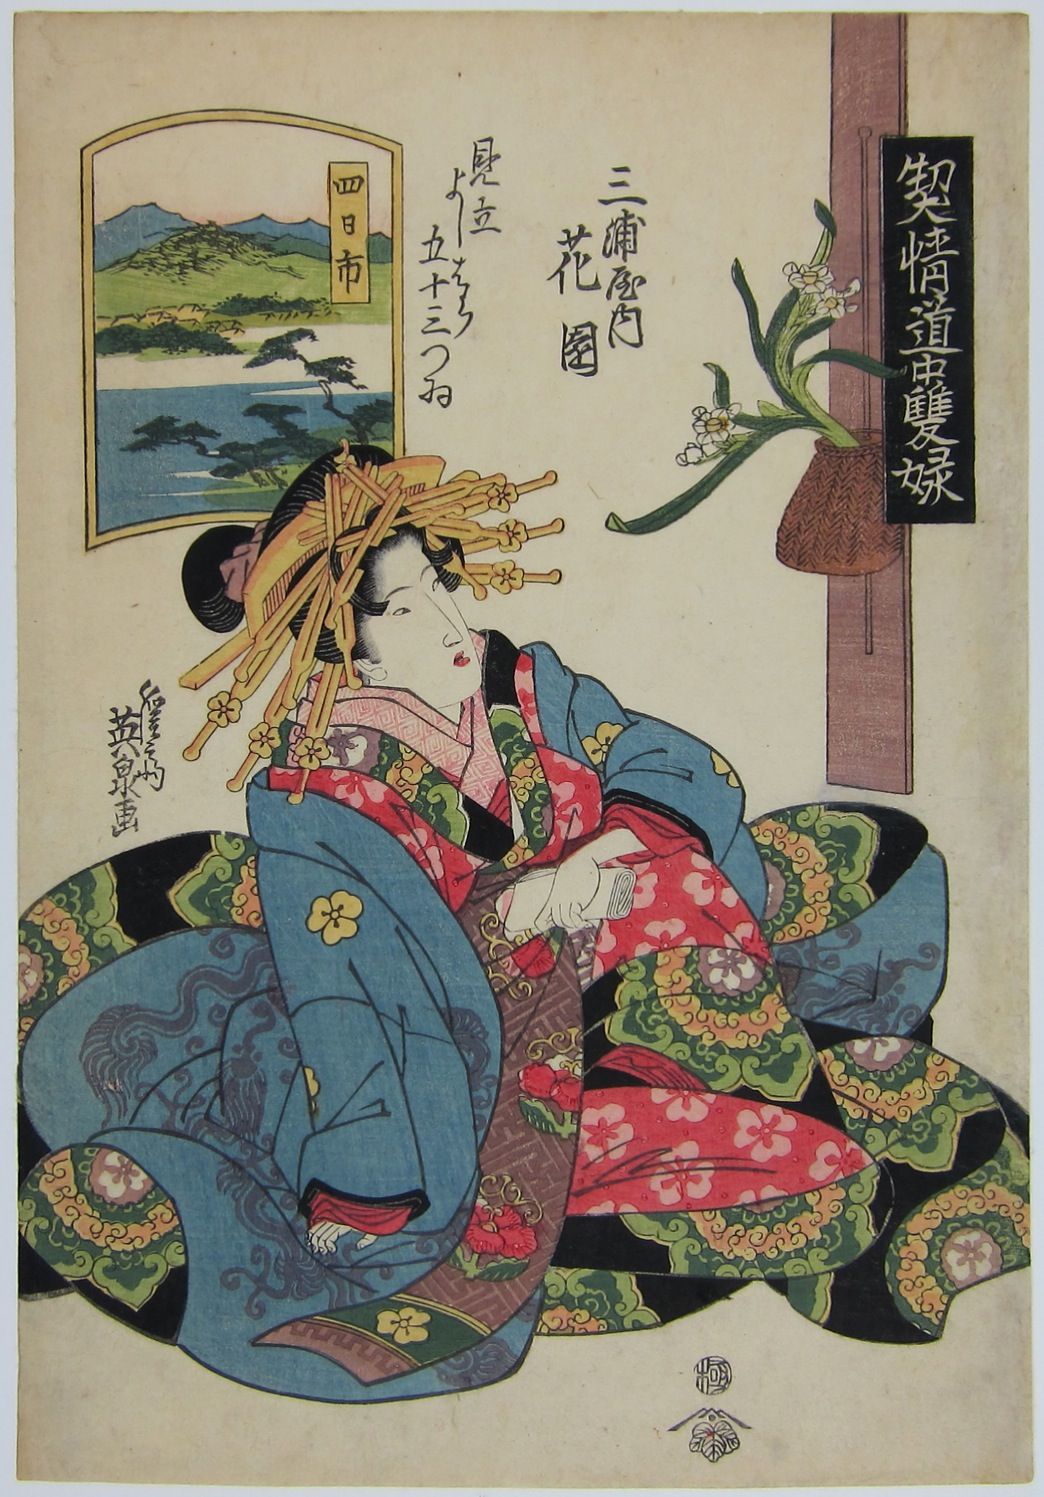 Yokkaichi: Hanazono of the Miu-raya. c.1821